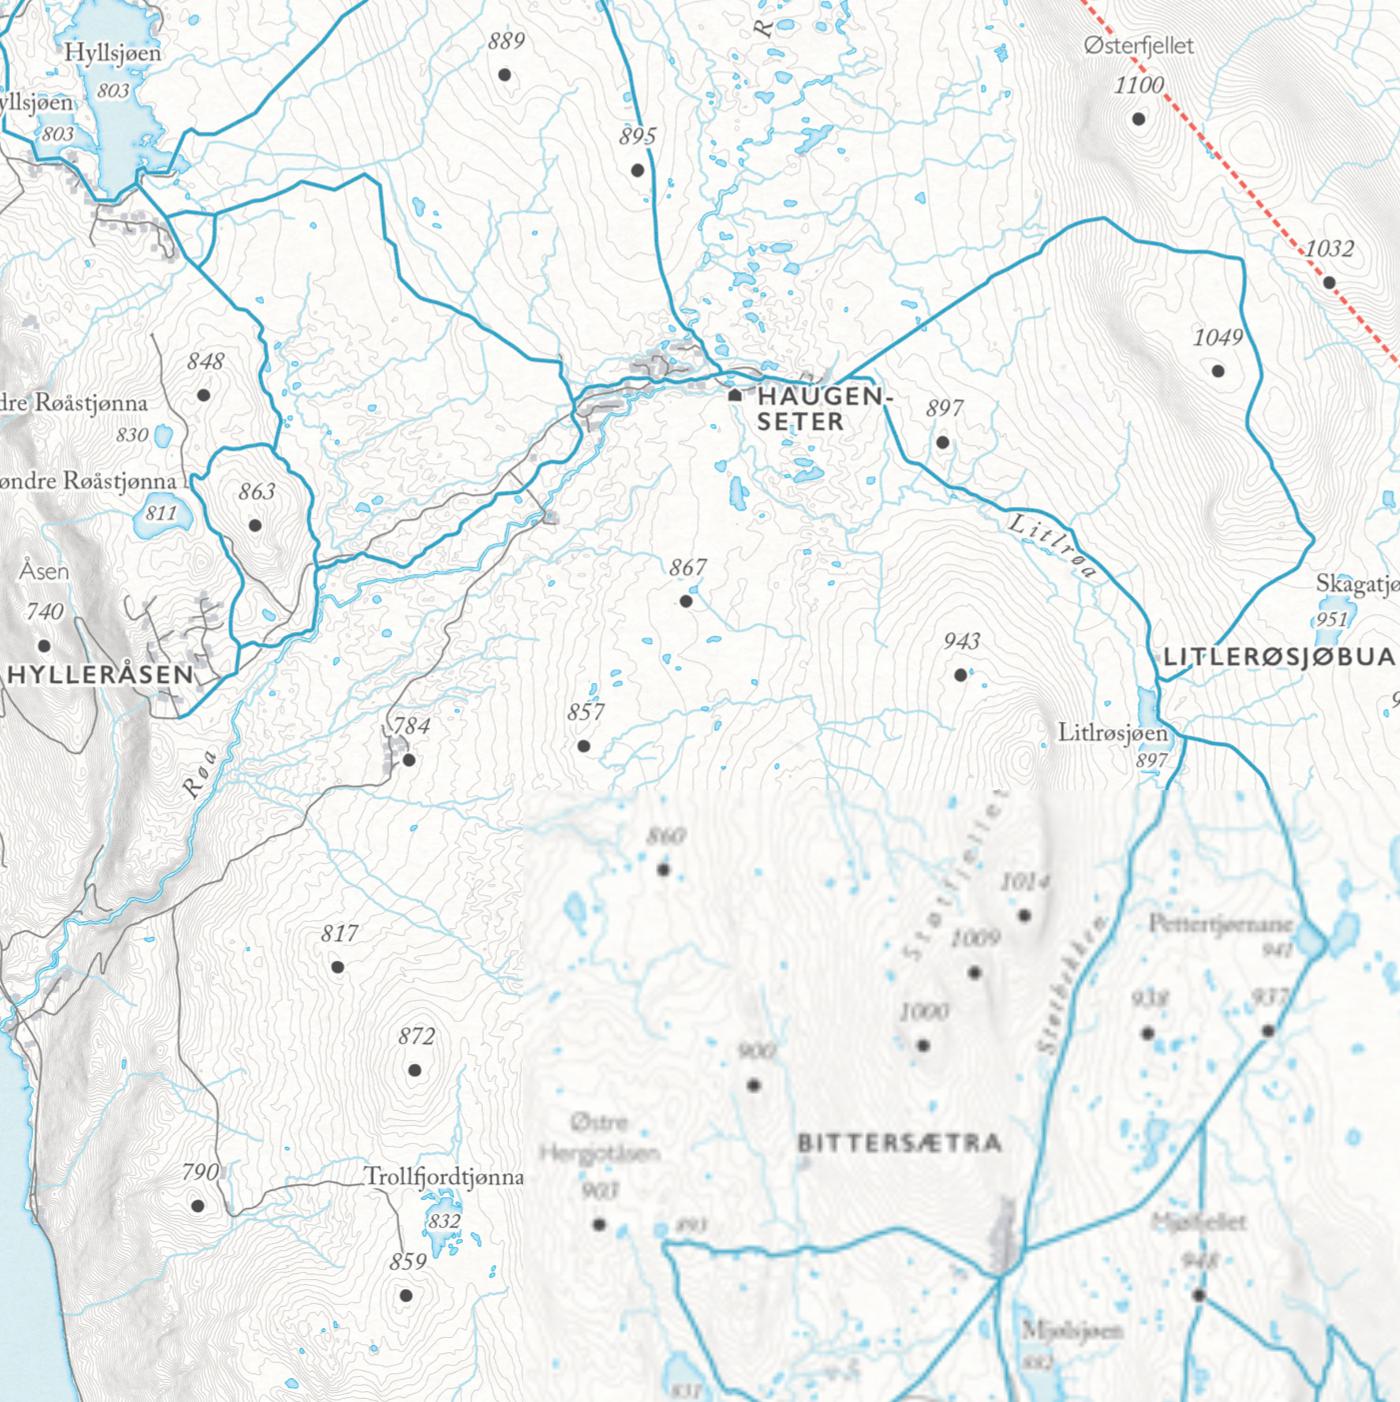 Skikart Engerdal (50x70 cm)-Maps-Dapamaps-Hyttefeber